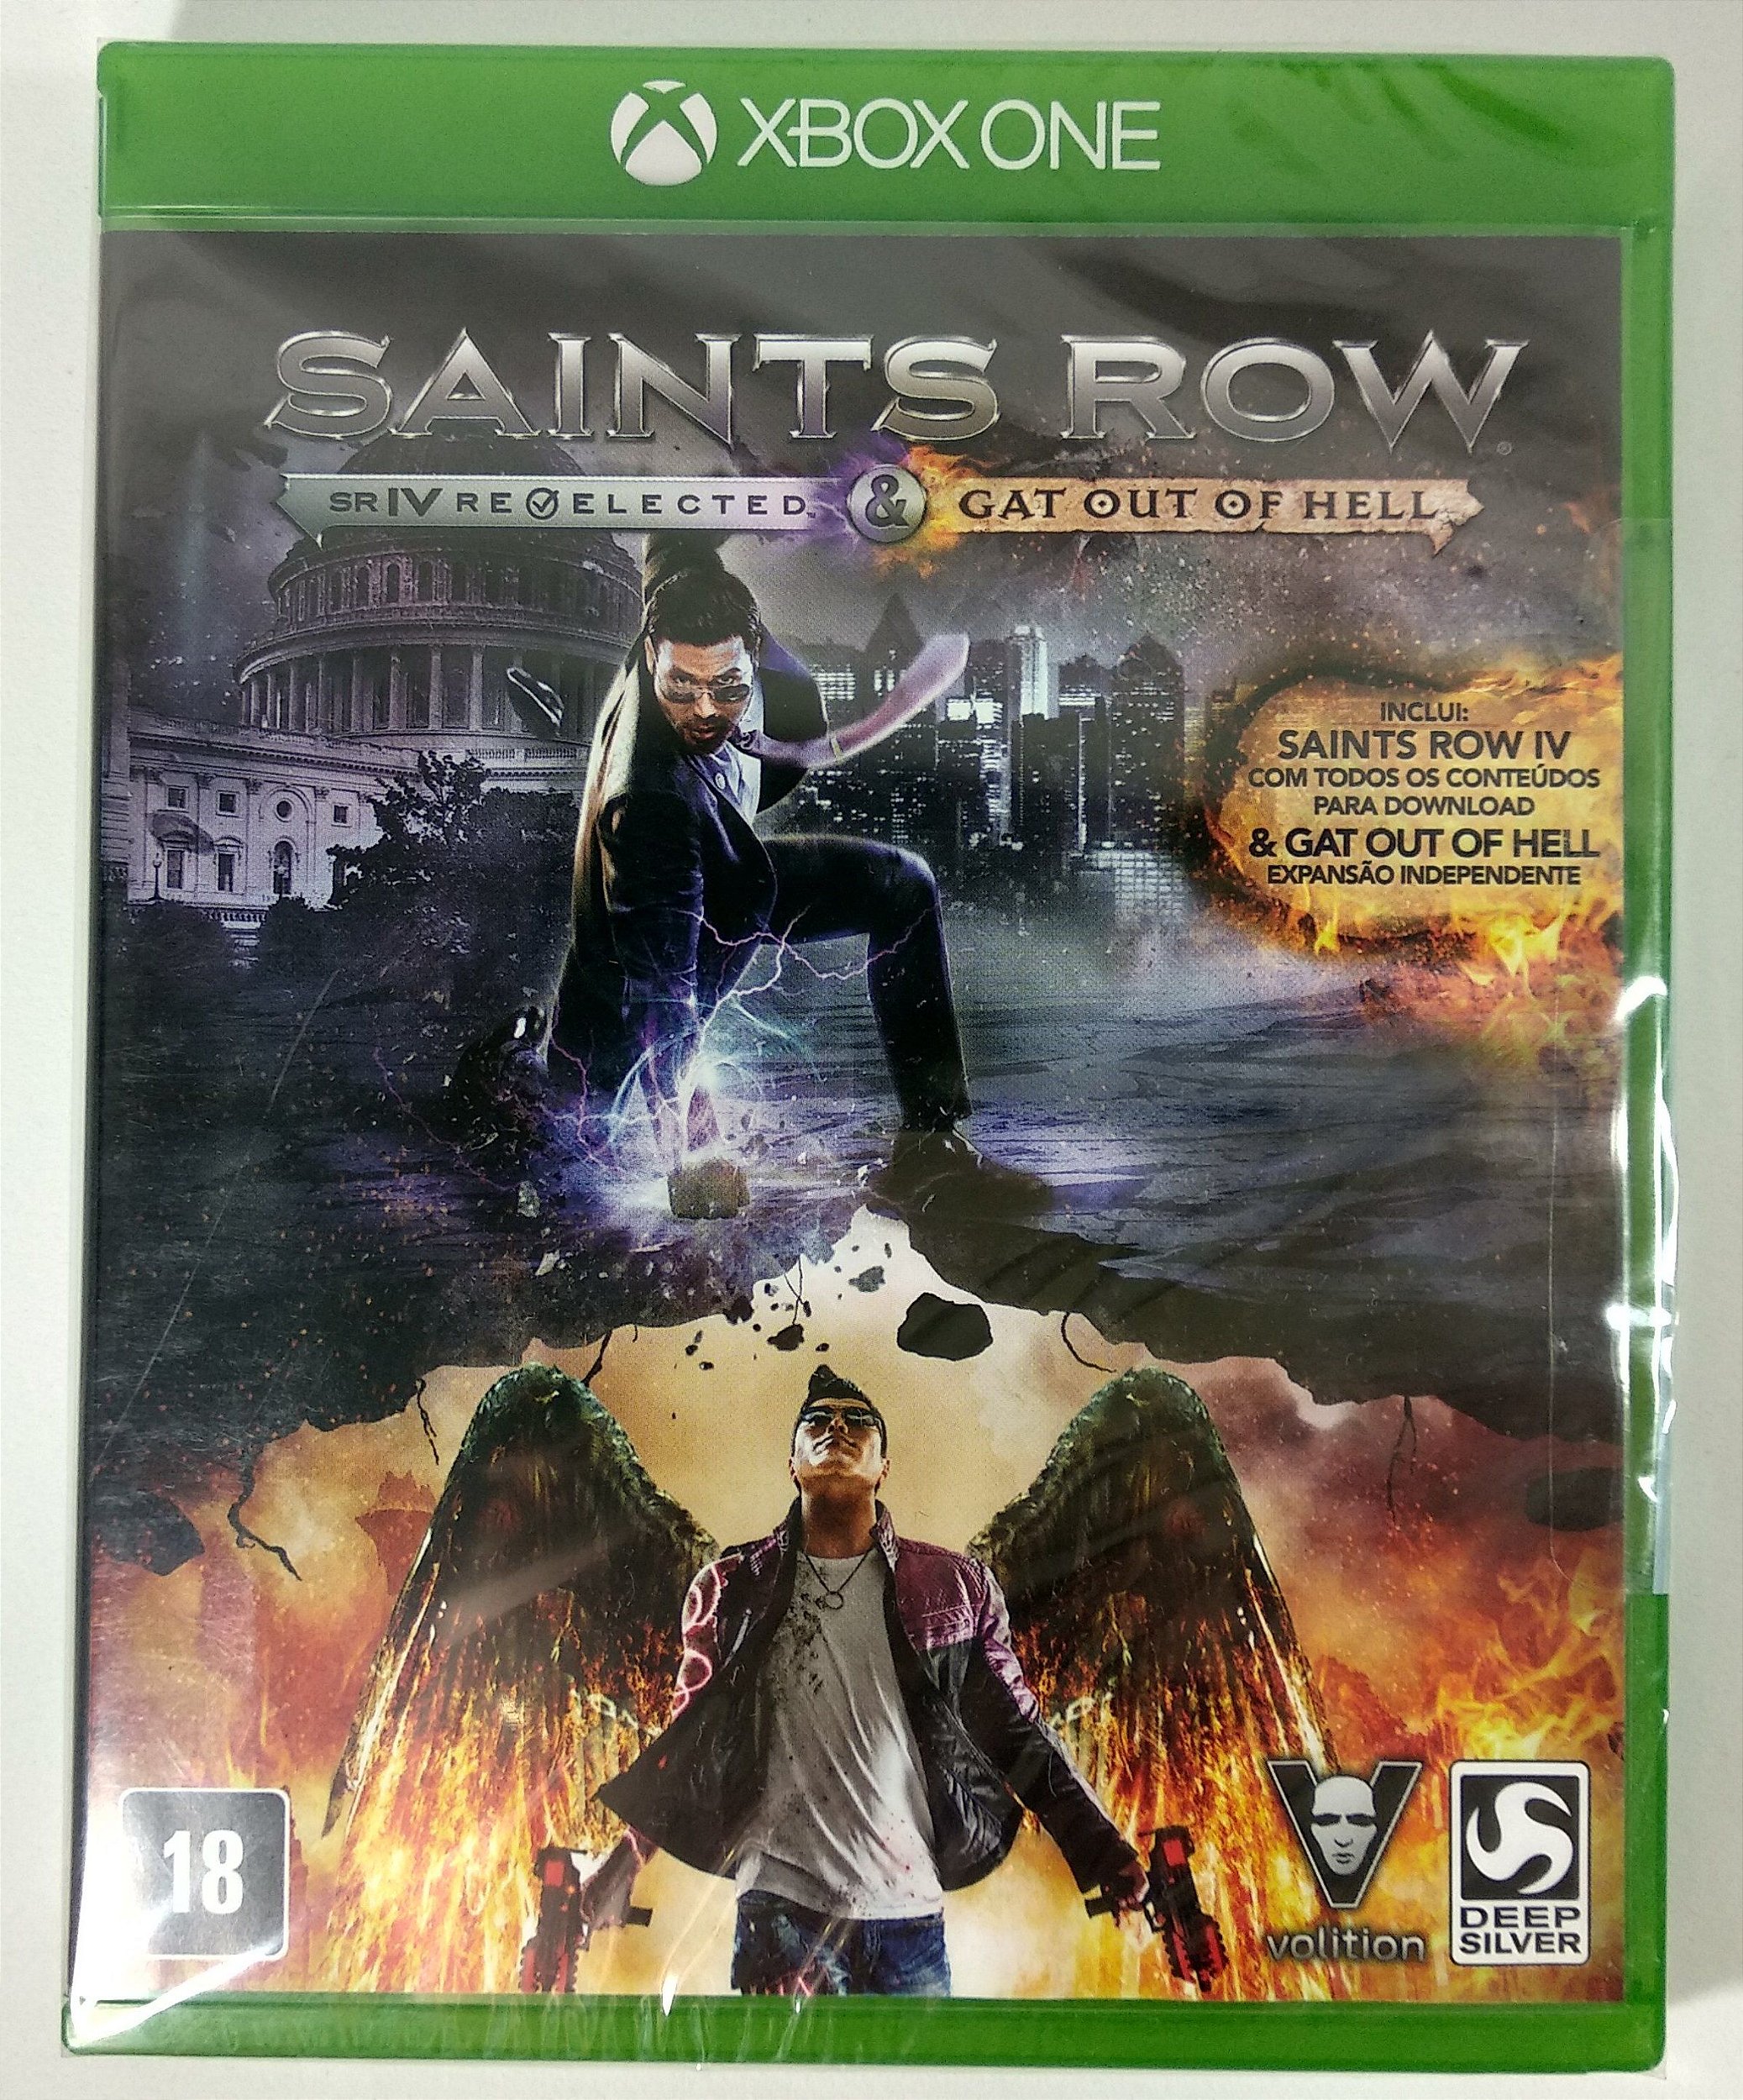 Jogo PS3 Original Saints Row The Tird Favoritos Mídia Física em